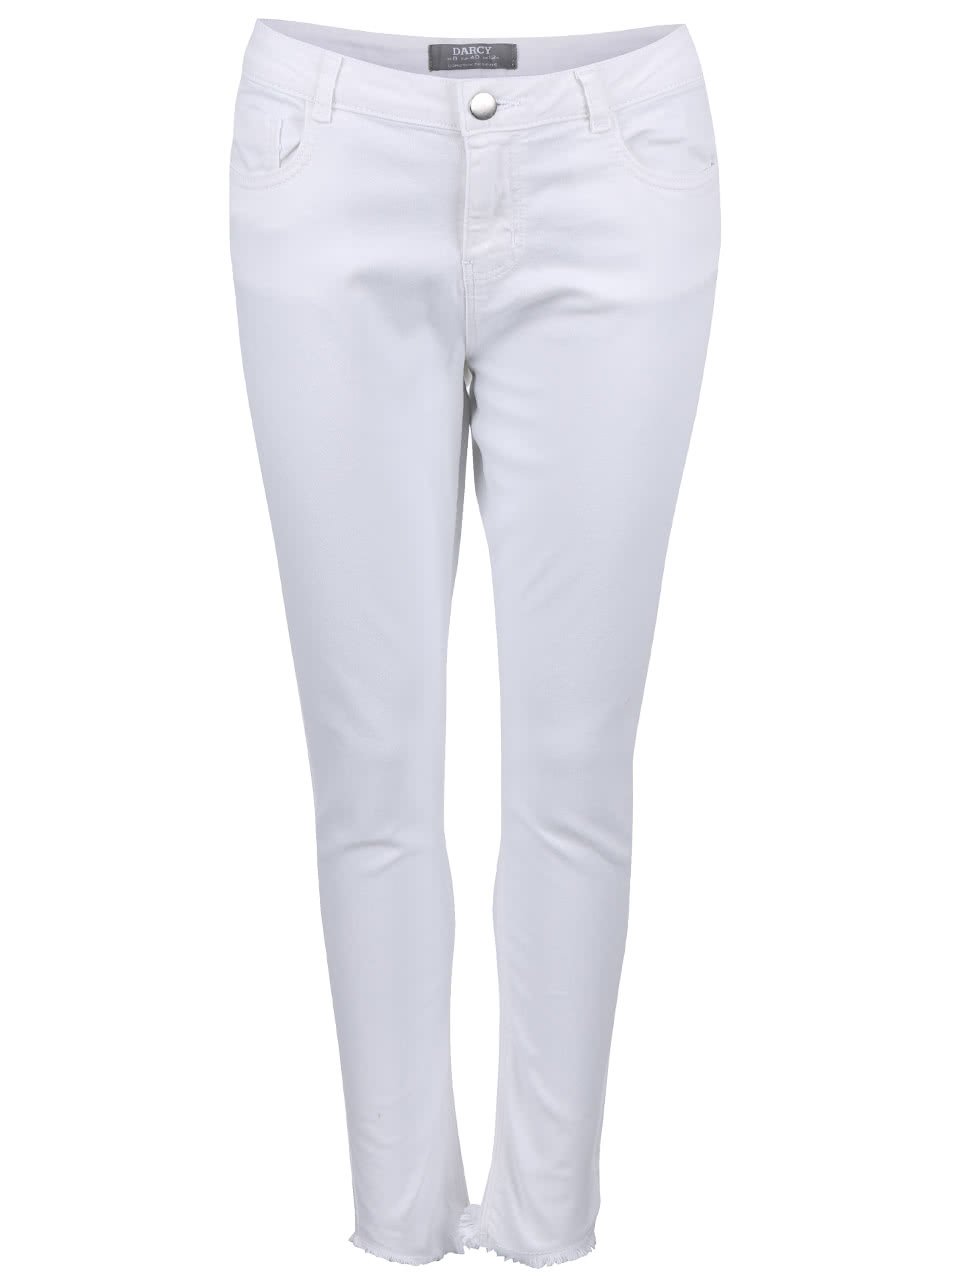 Bílé džíny s roztřepenými nohavicemi Dorothy Perkins